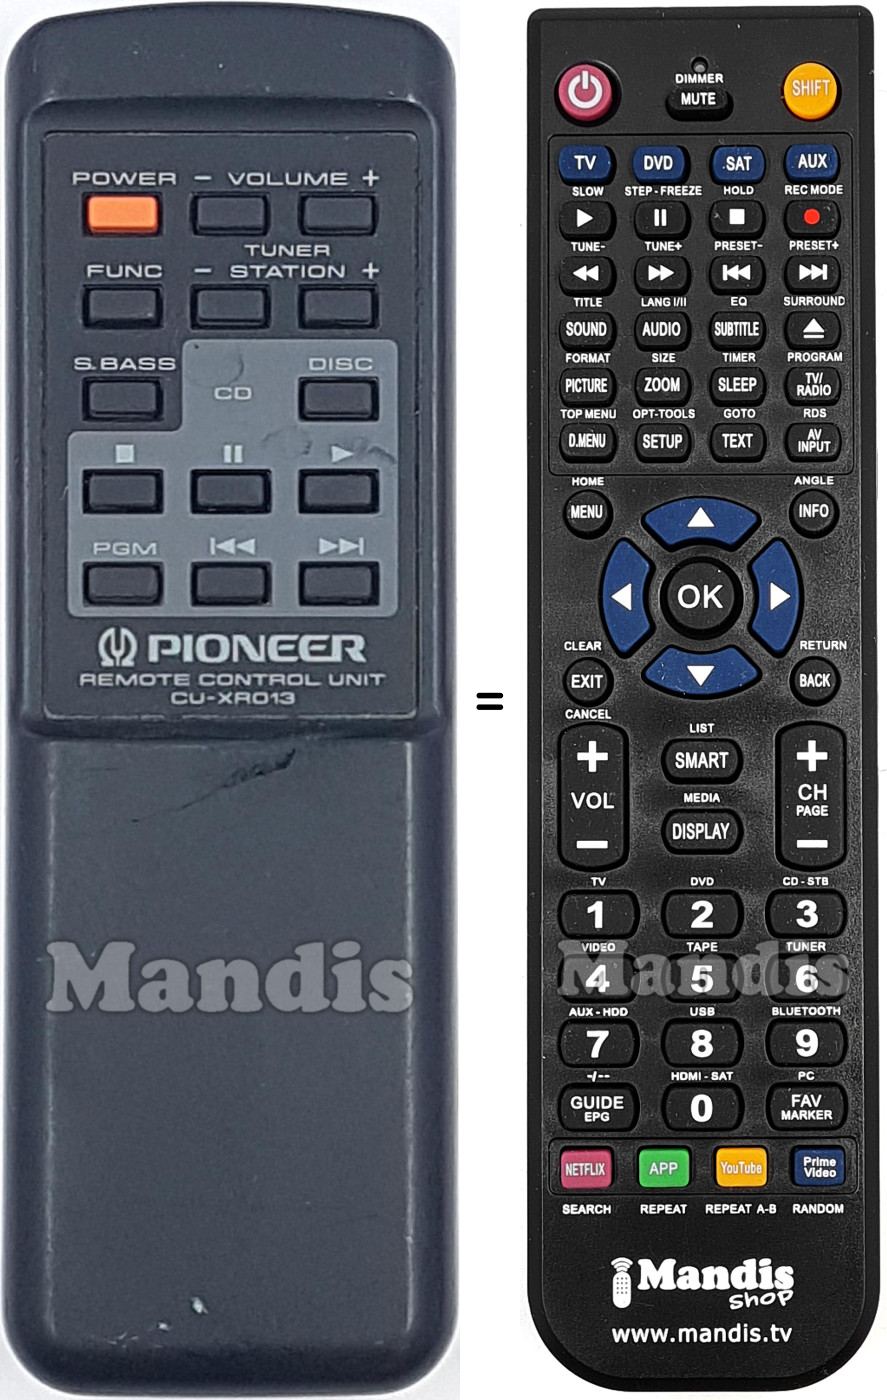 Replacement remote control CU-XR013